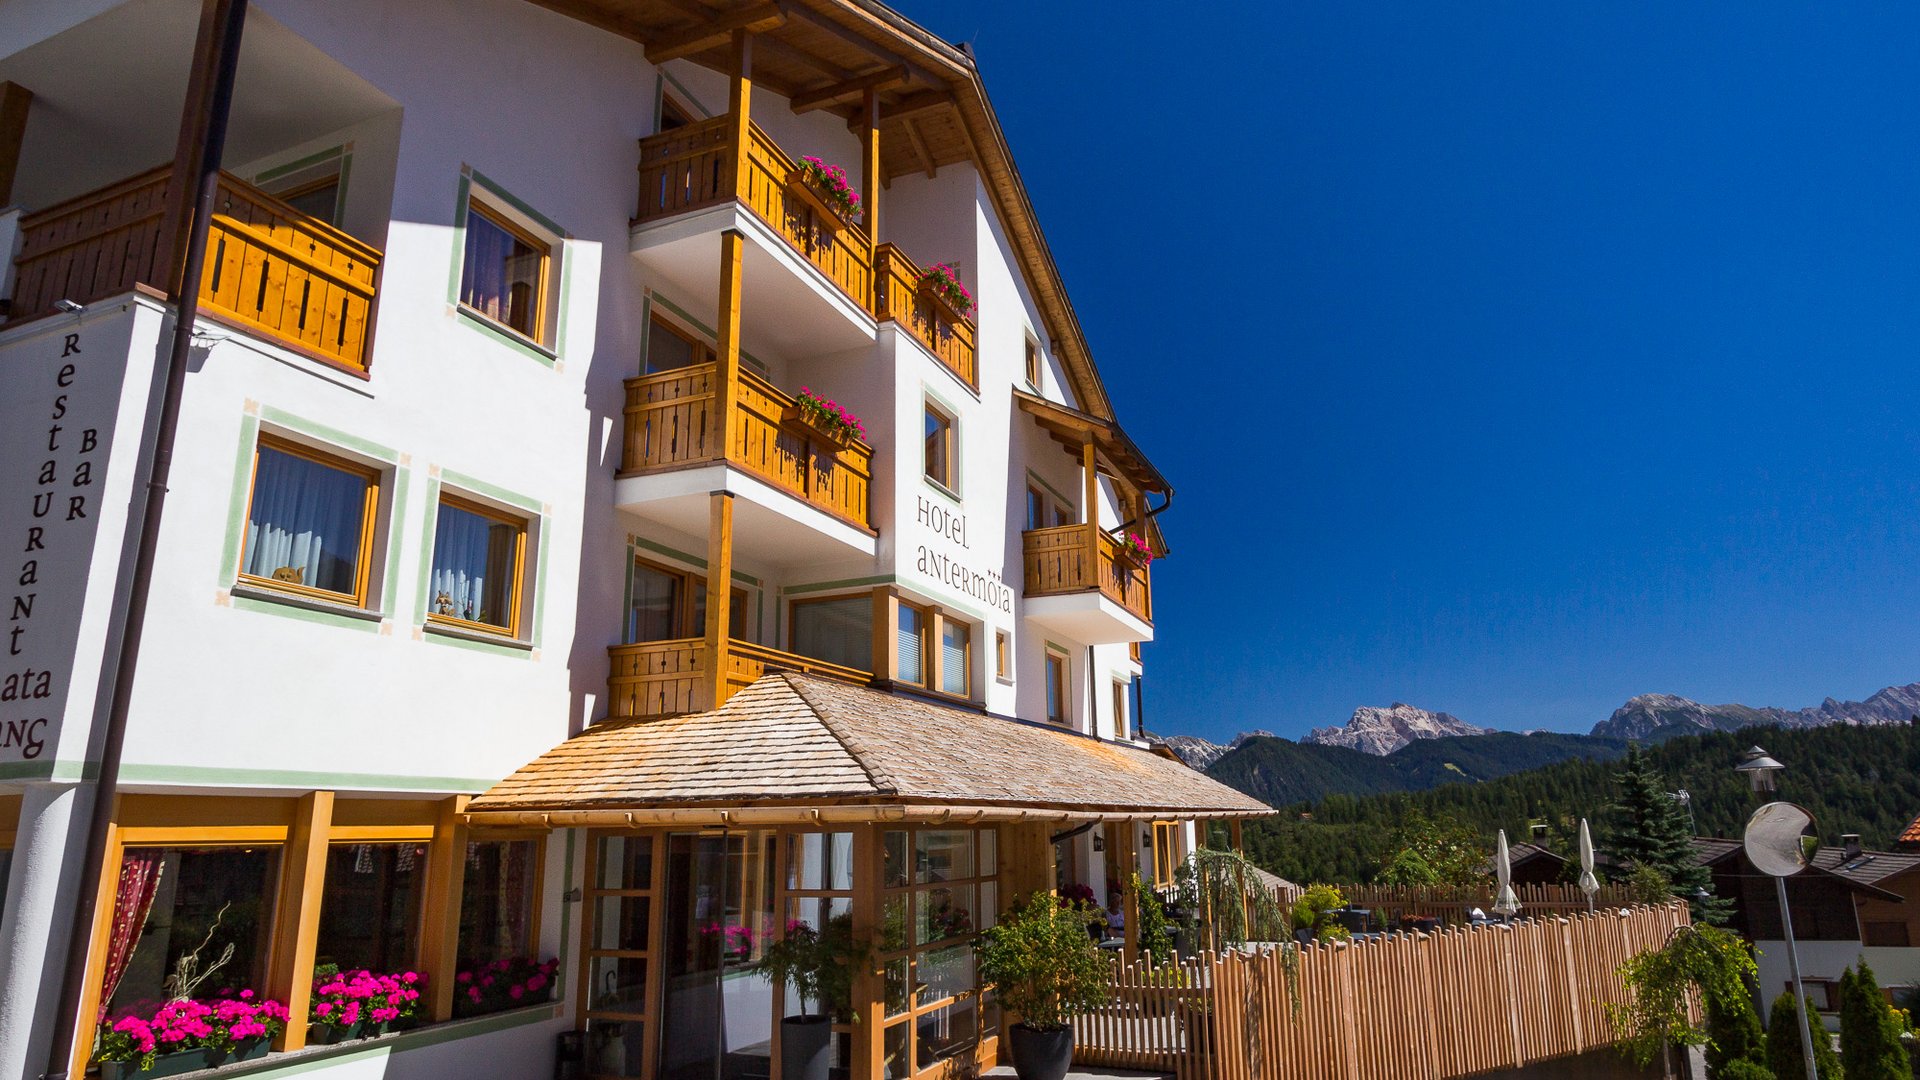 Un hotel con spa in Val Badia? Eccolo, insieme a info utili